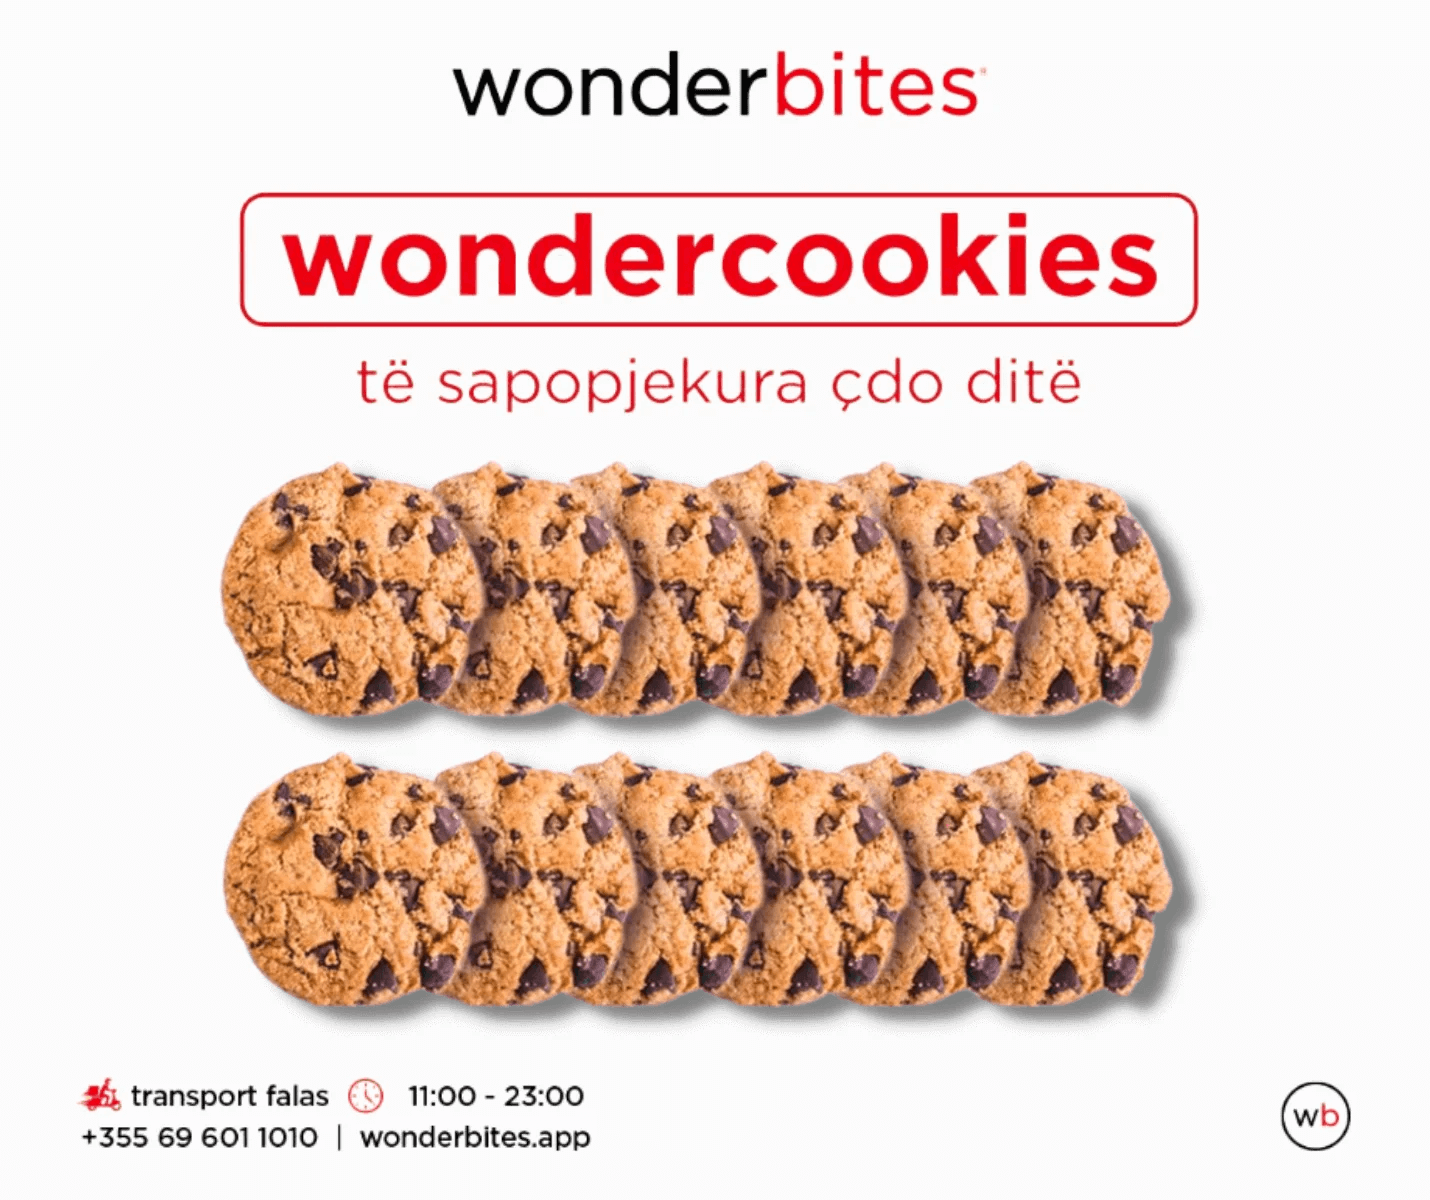 Wondercookies 12